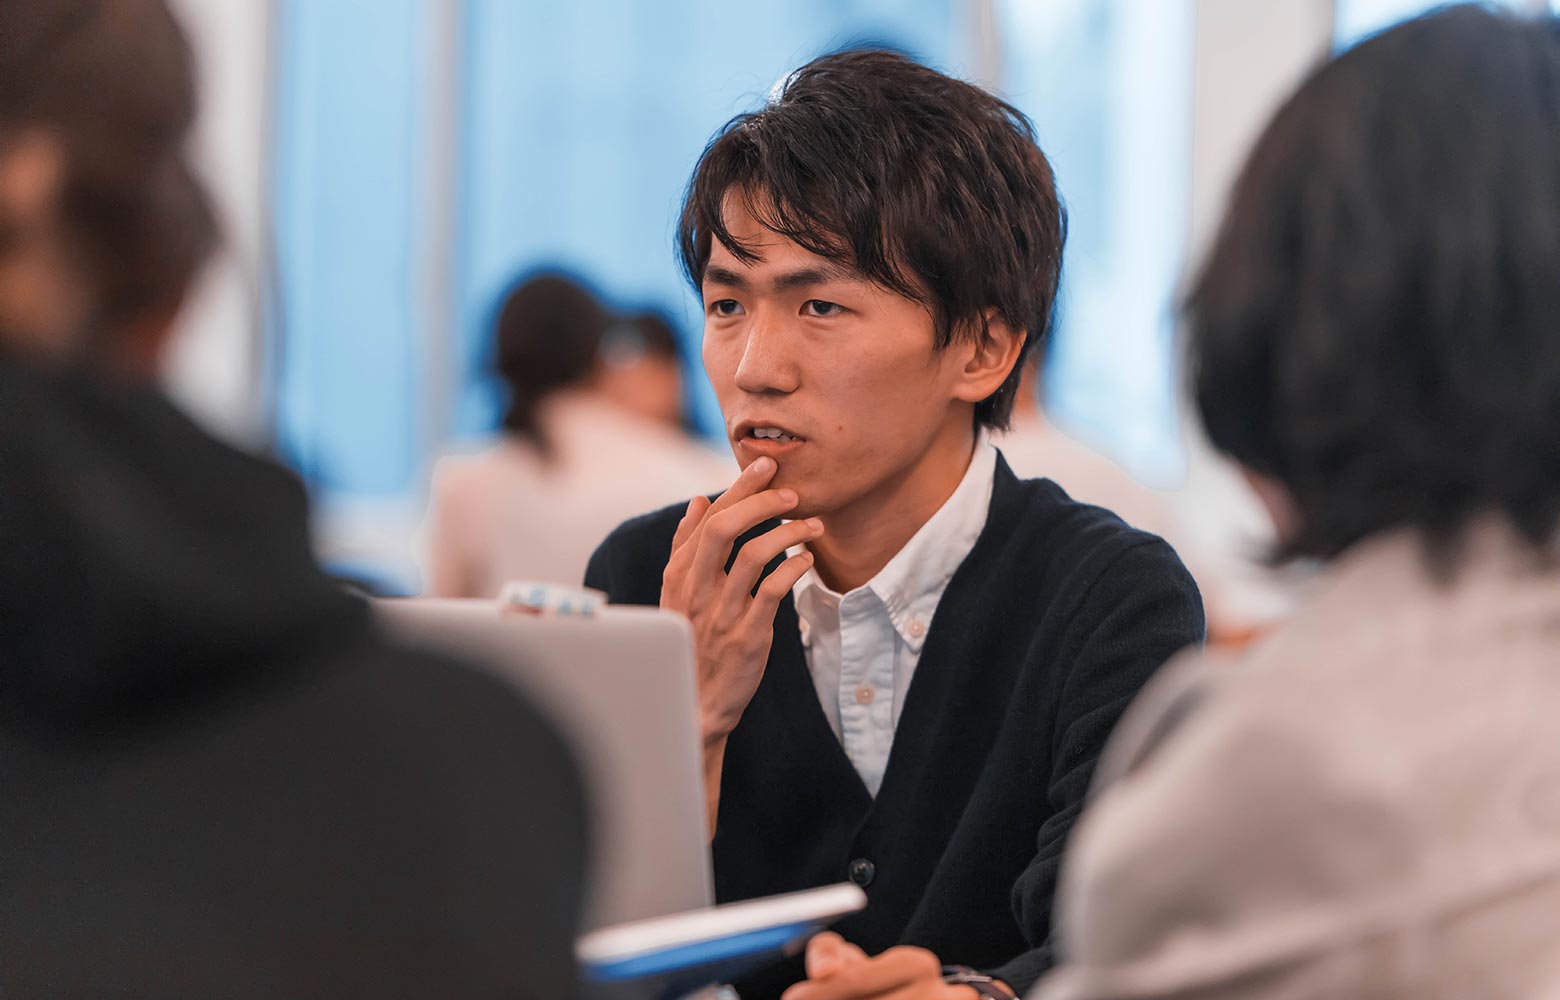 『地方学生の選択肢を広げる存在に　新卒でリモートワークをしながら広島に住み続ける理由』中村優